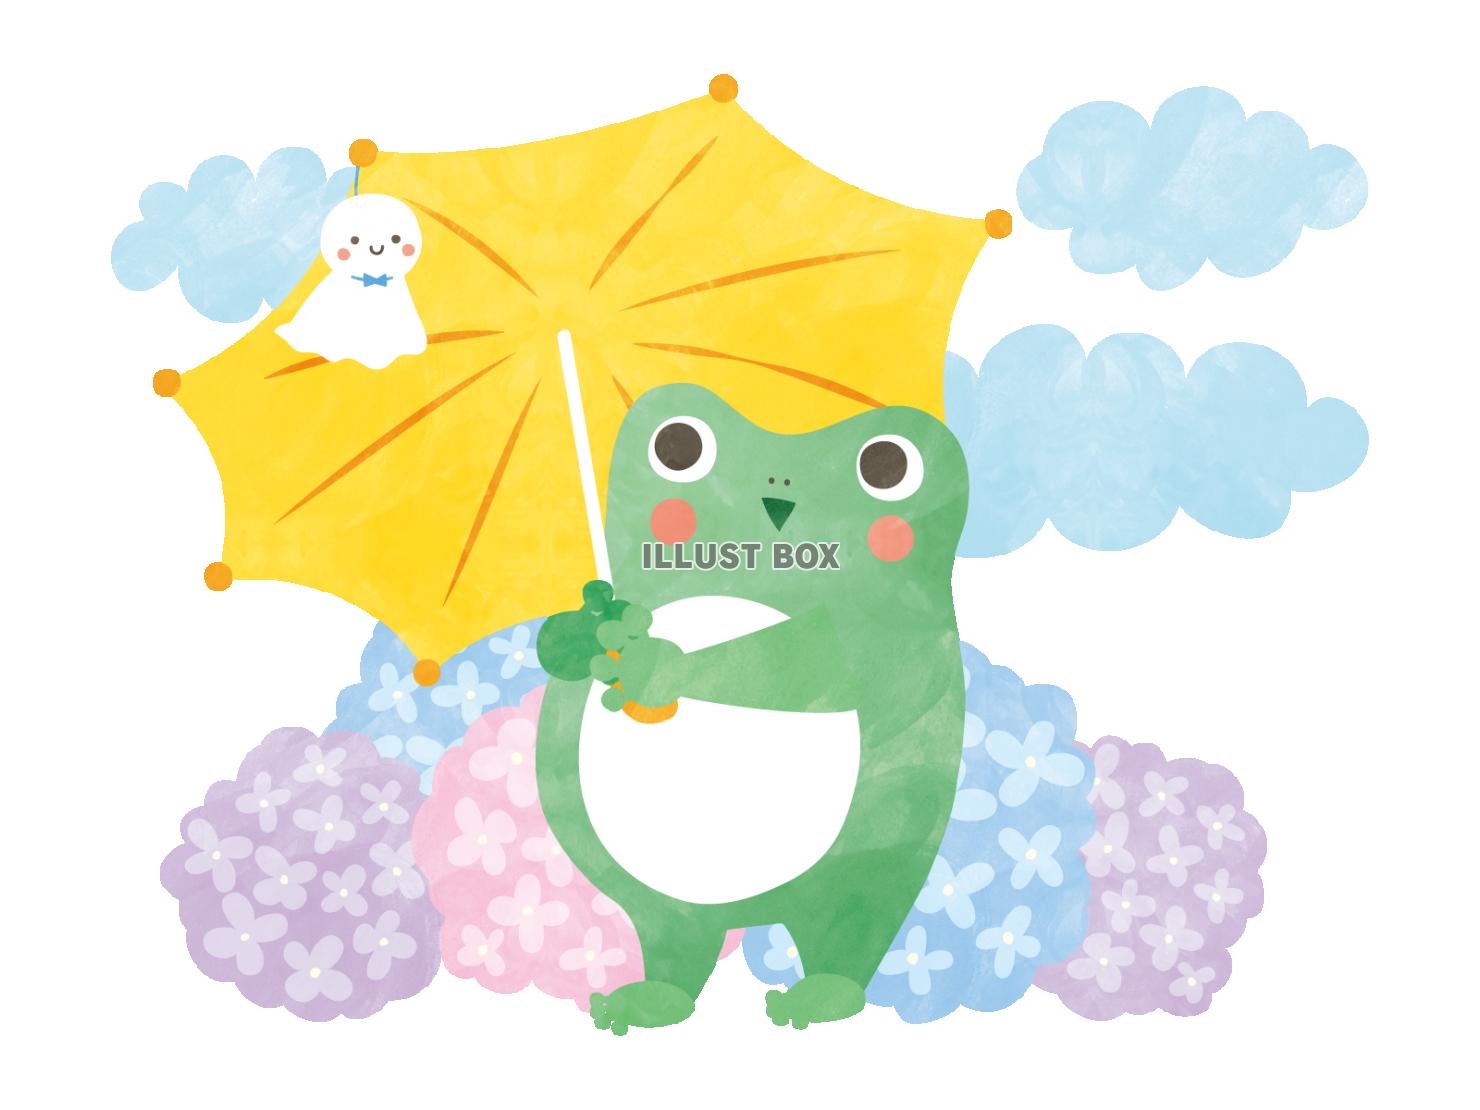 てるてる坊主をつけた、傘をさすカエルの水彩風イラスト